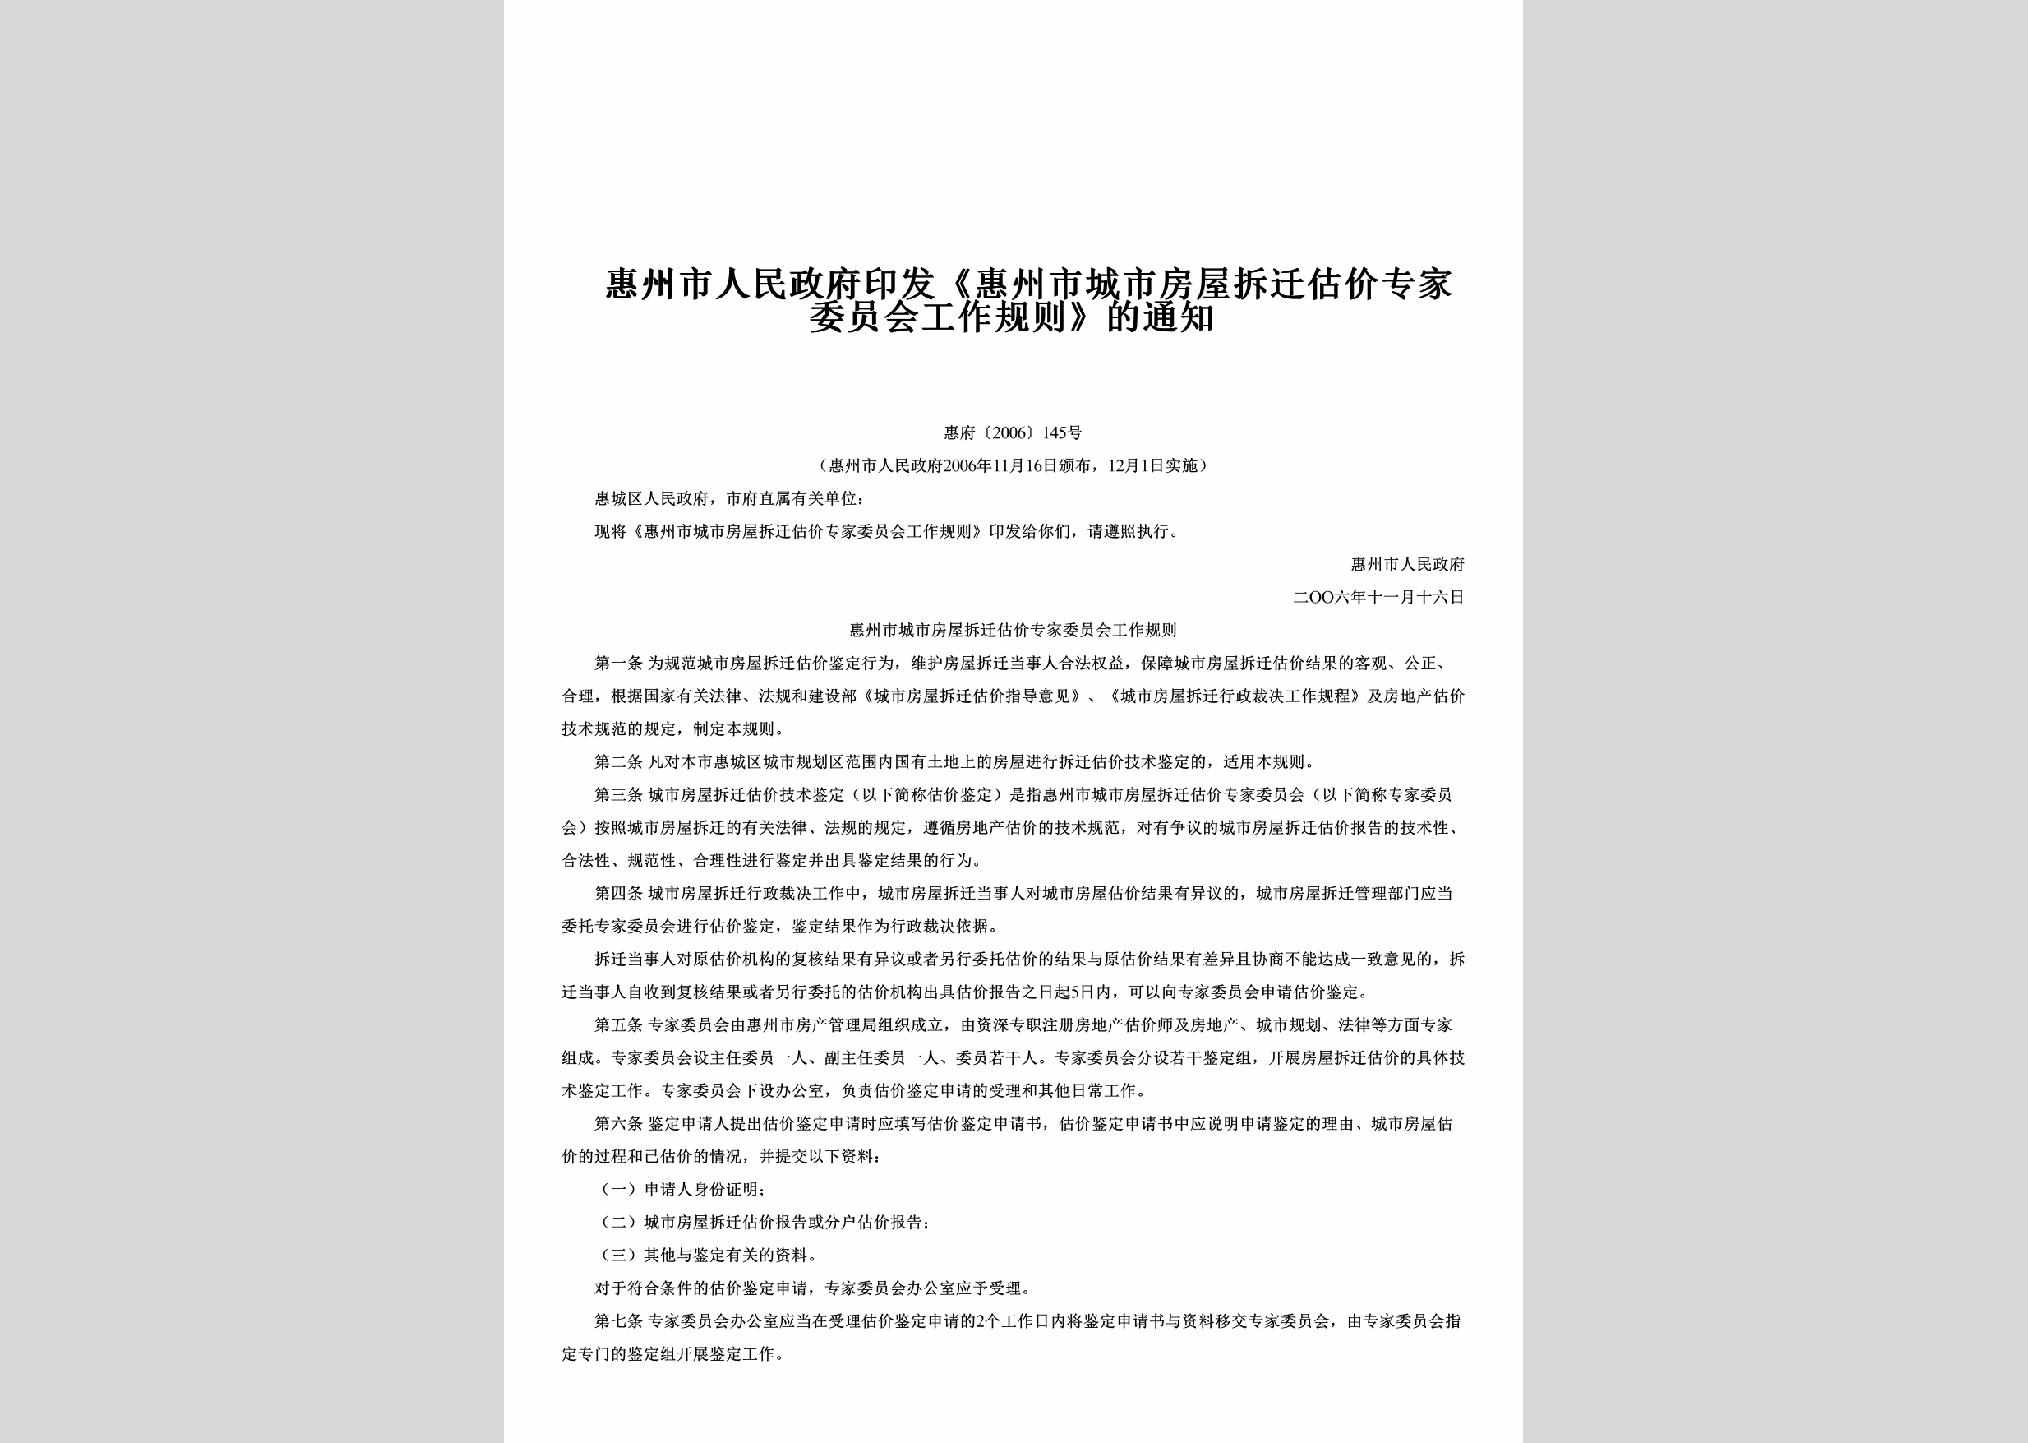 惠府[2006]145号：印发《惠州市城市房屋拆迁估价专家委员会工作规则》的通知